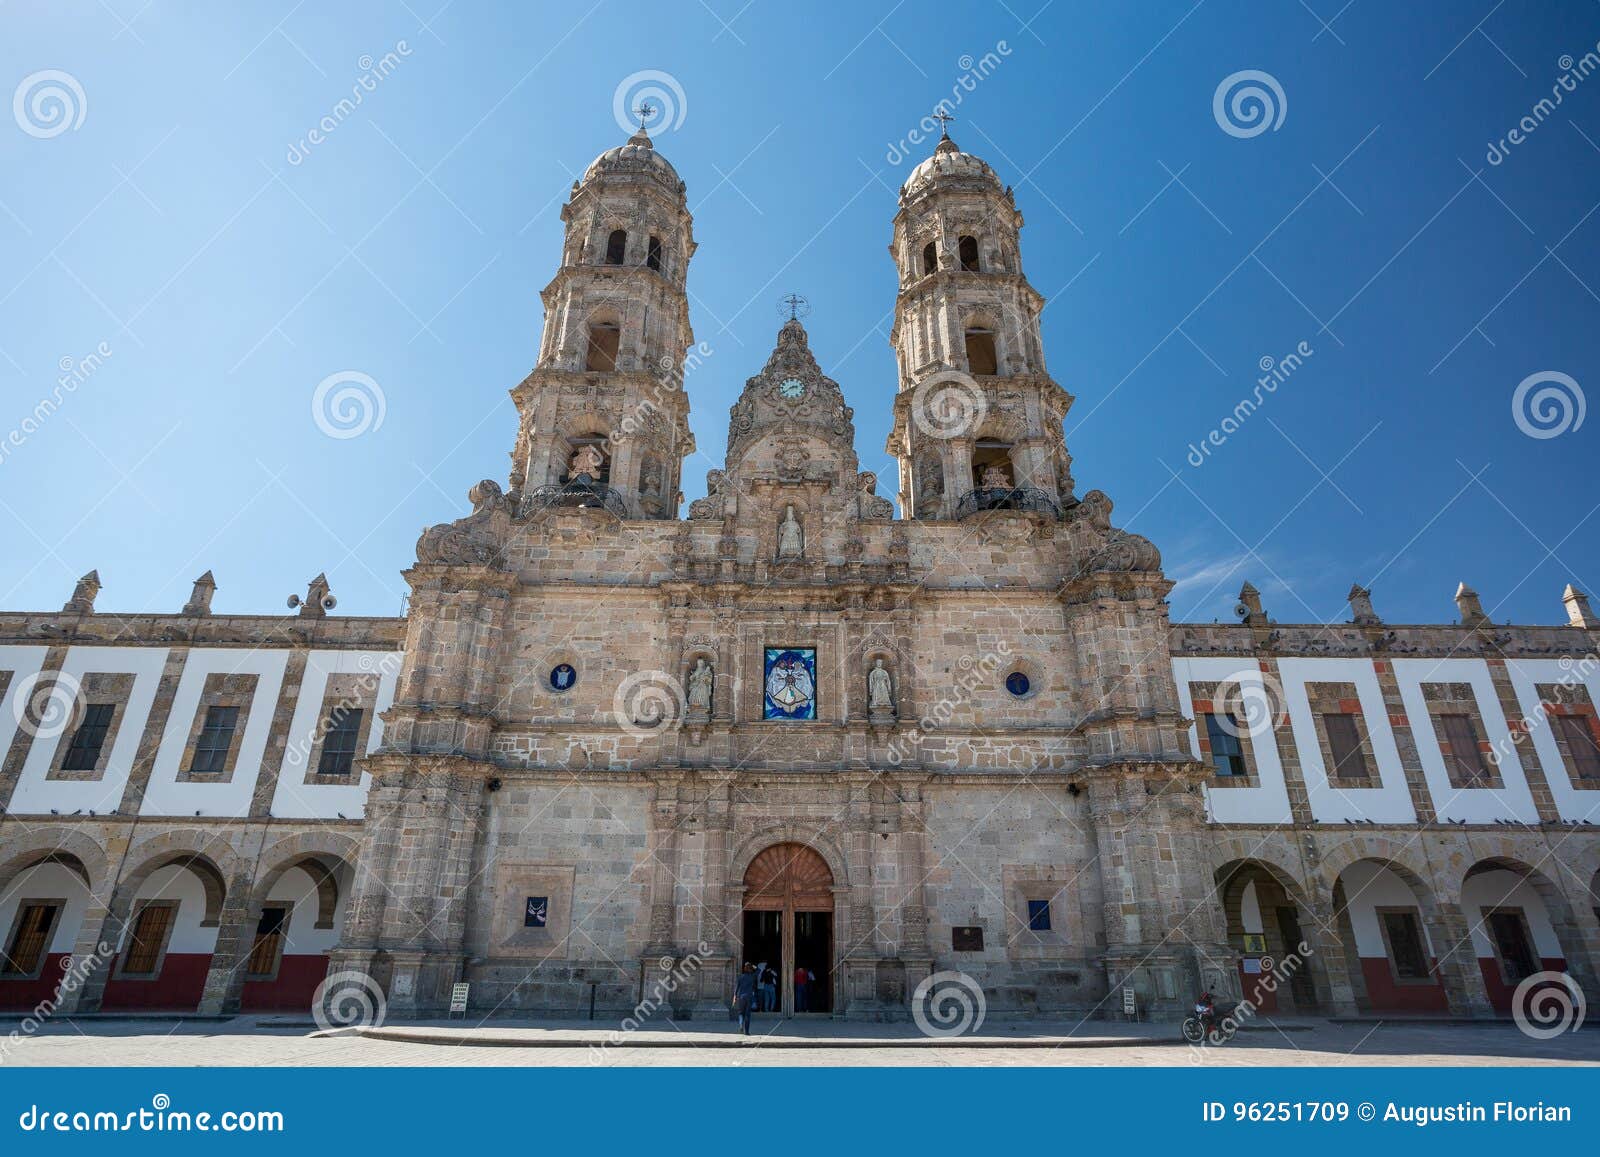 plaza de las americas and church, zapopan, guadalajara, mexico